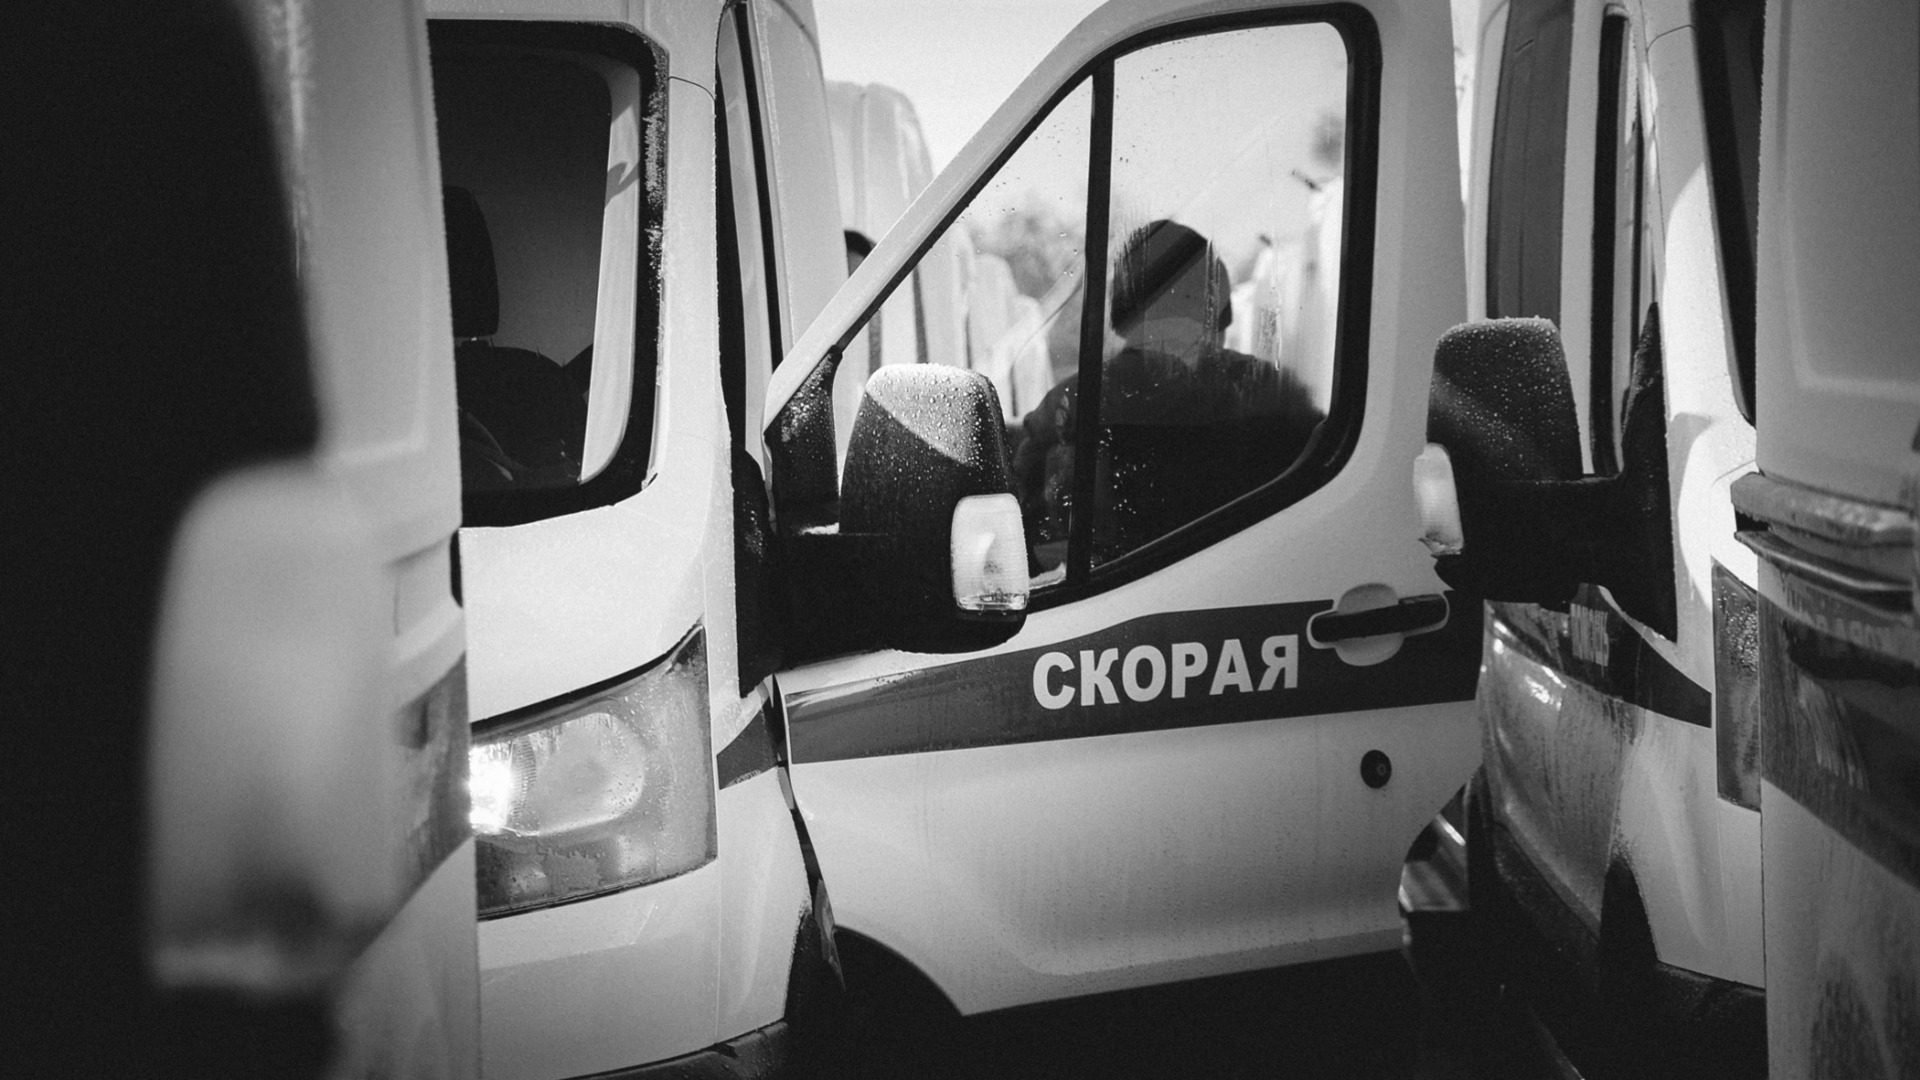 Семь детей и взрослый пострадали при обрушении трибуны на Гребном канале в Ростове